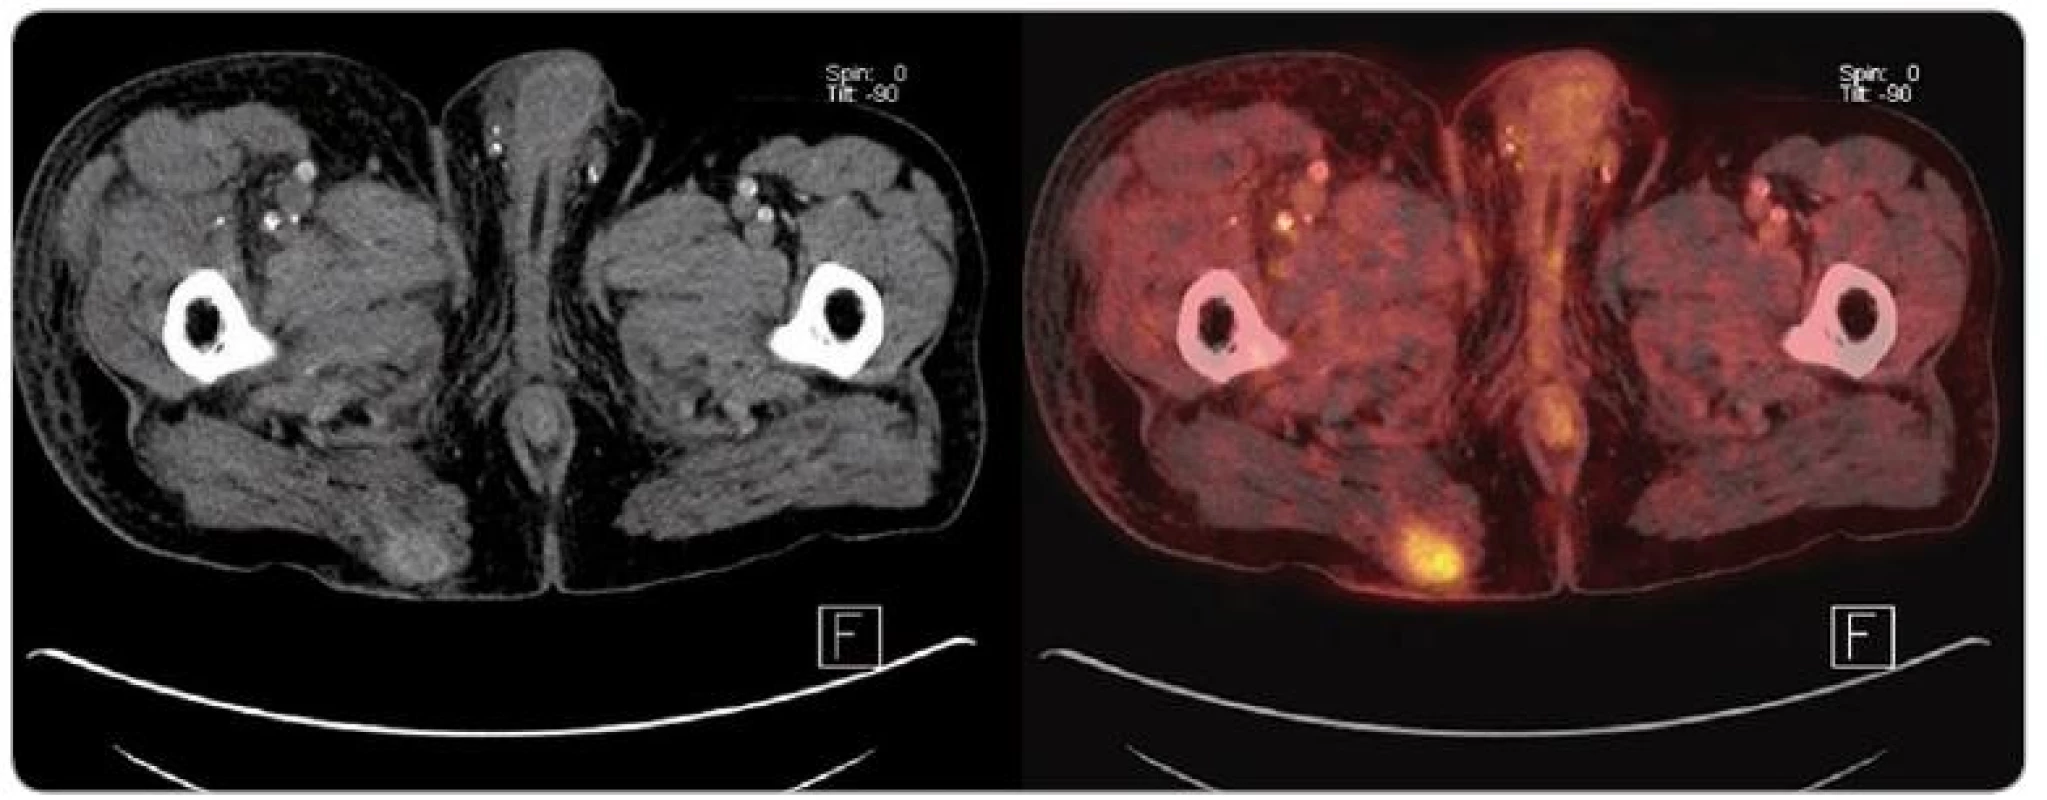 PET/ CT obraz rekurujícího ložiska karcinomu z Merkelových buněk v oblasti pravé hýždě u pacienta po kombinované transplantaci slinivky a ledviny.